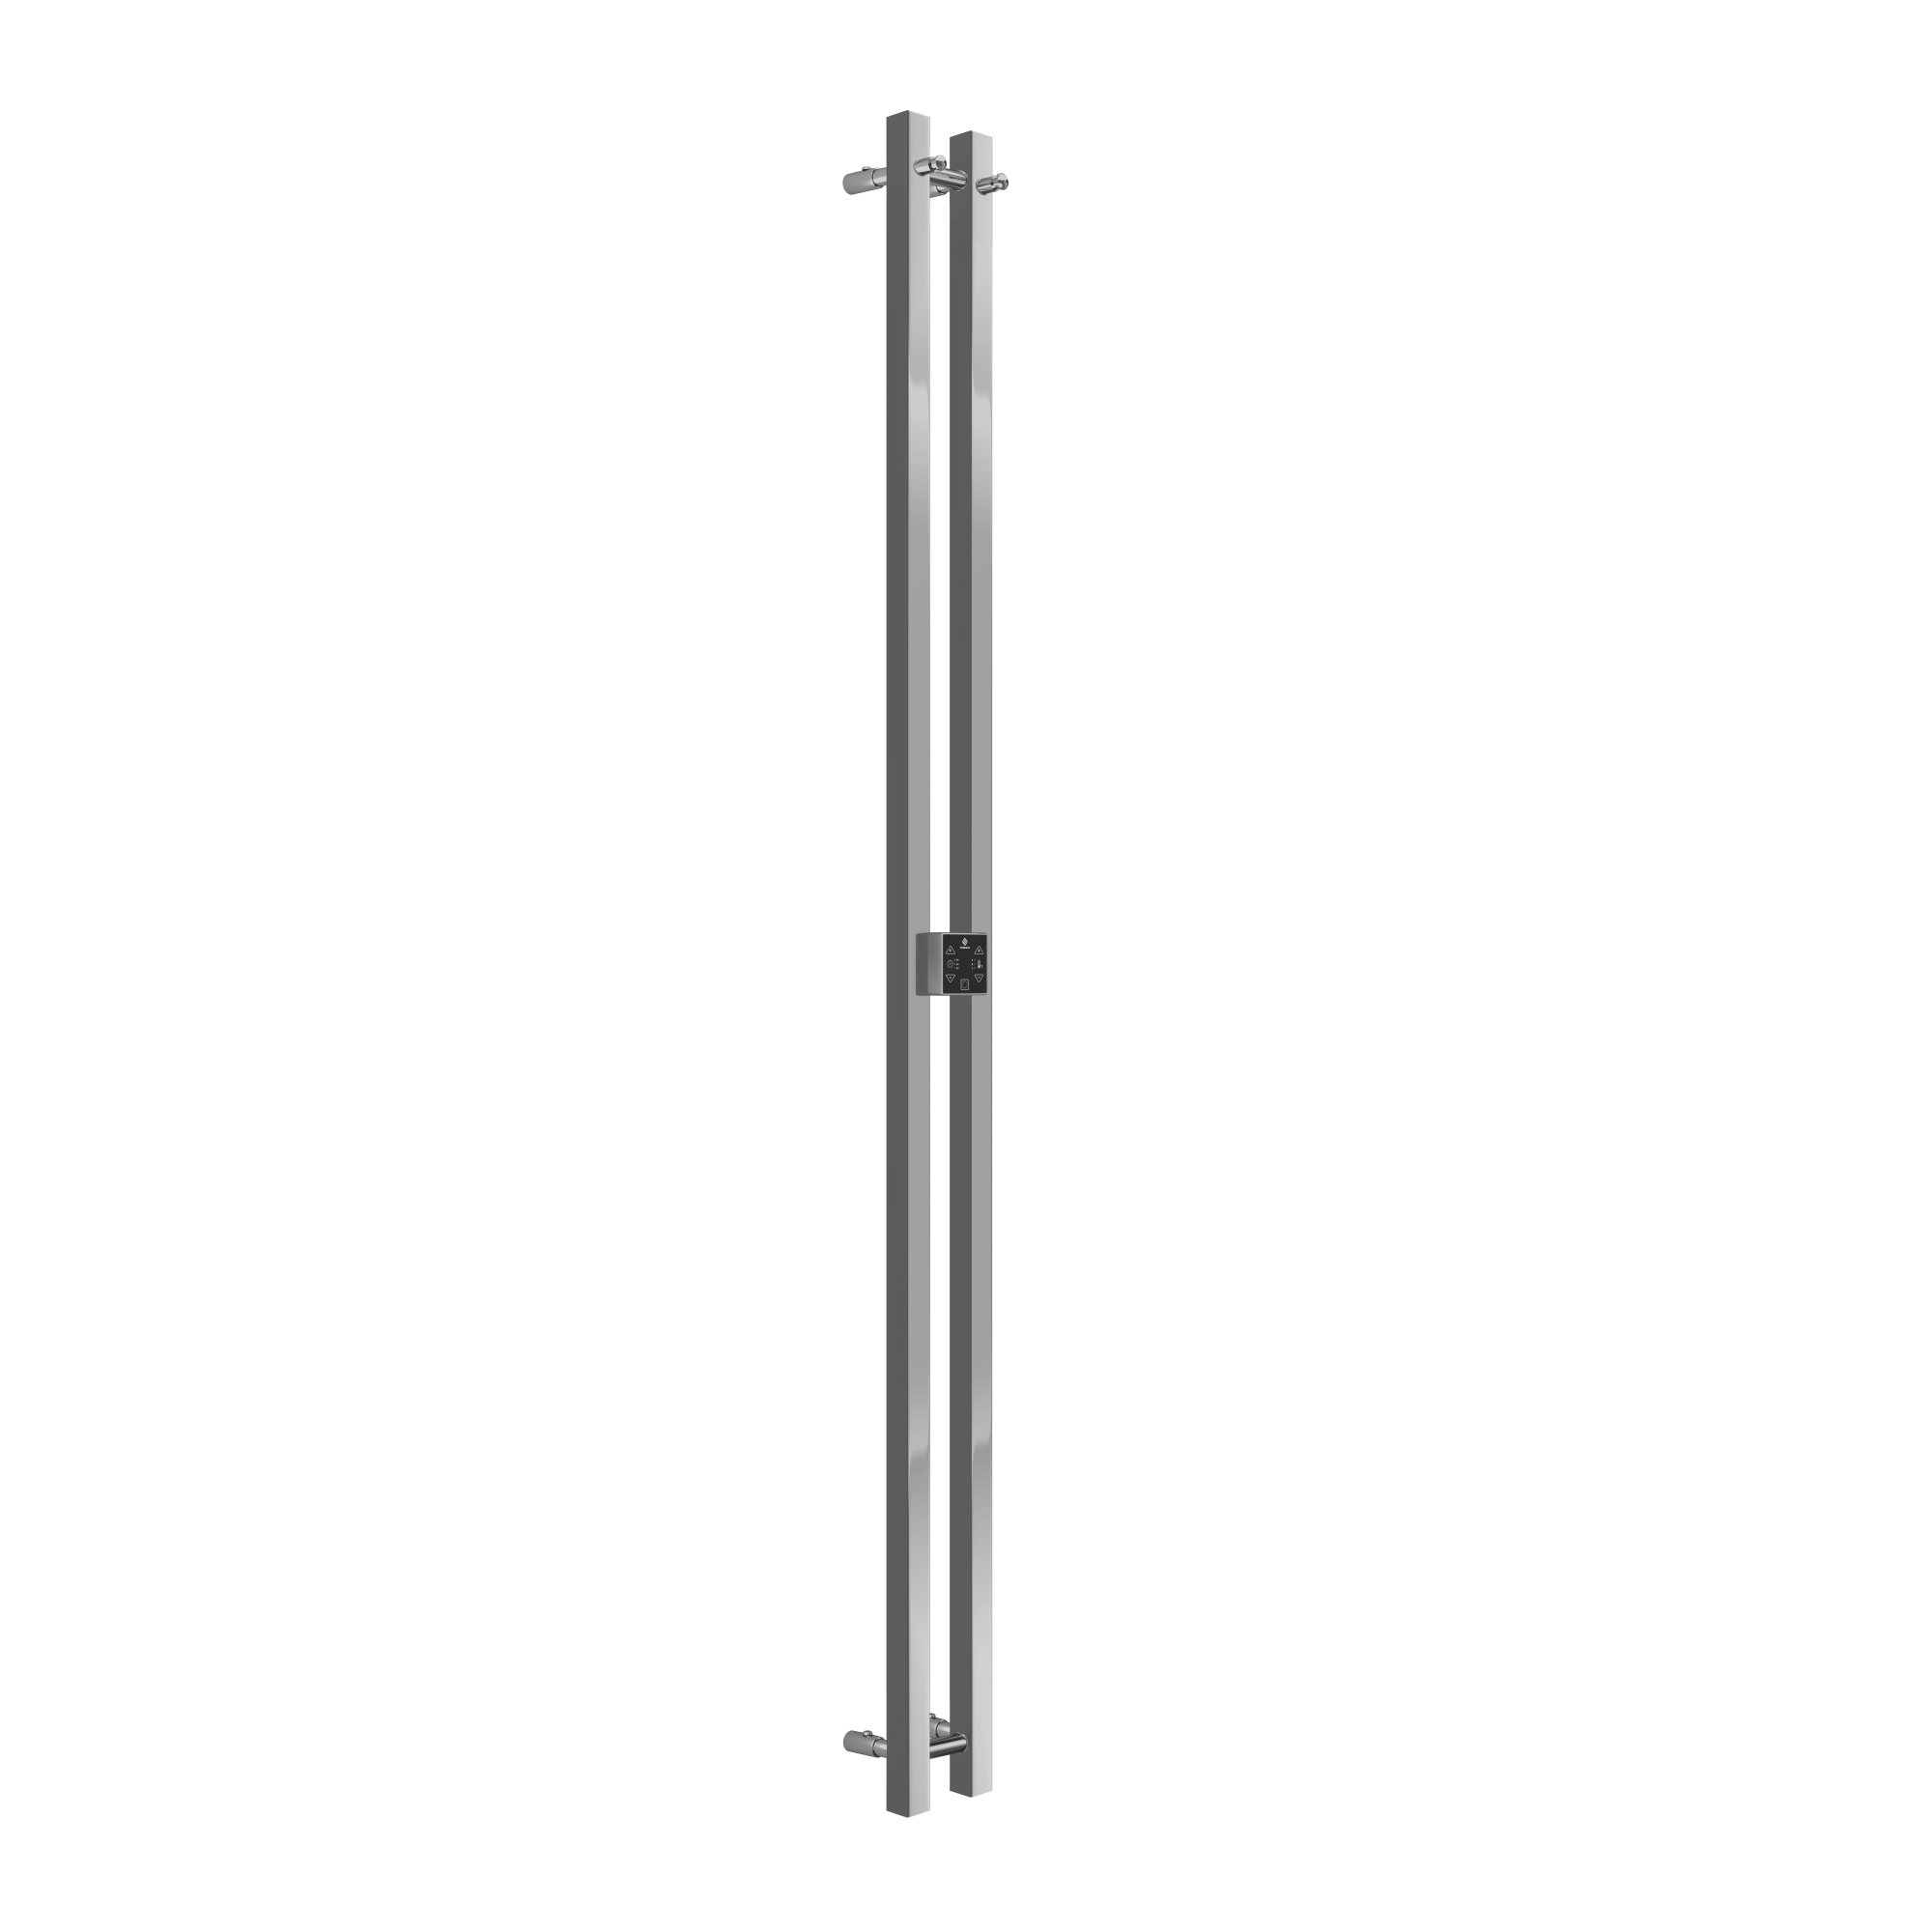 Полотенцесушитель электрический Terminus Стойка DUO 1600 (4670078528377) стойка для одежды unistor basic практичная с регулируемой высотой боковые крючки для зонтов и сумок